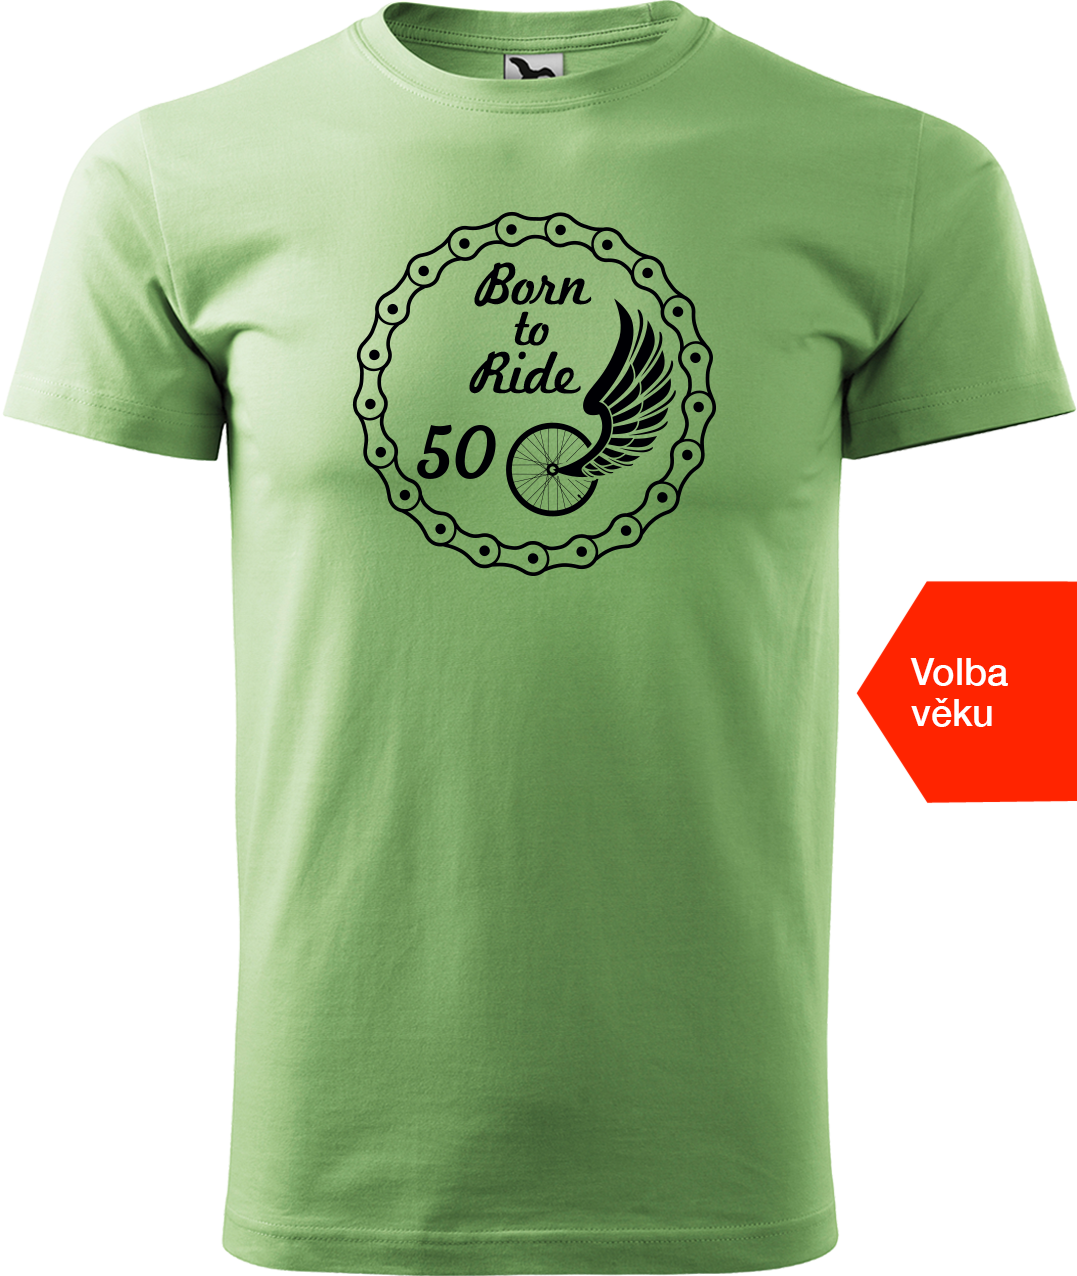 Pánské tričko pro cyklistu s věkem - Born to Ride (wings) Velikost: XL, Barva: Trávově zelená (39)